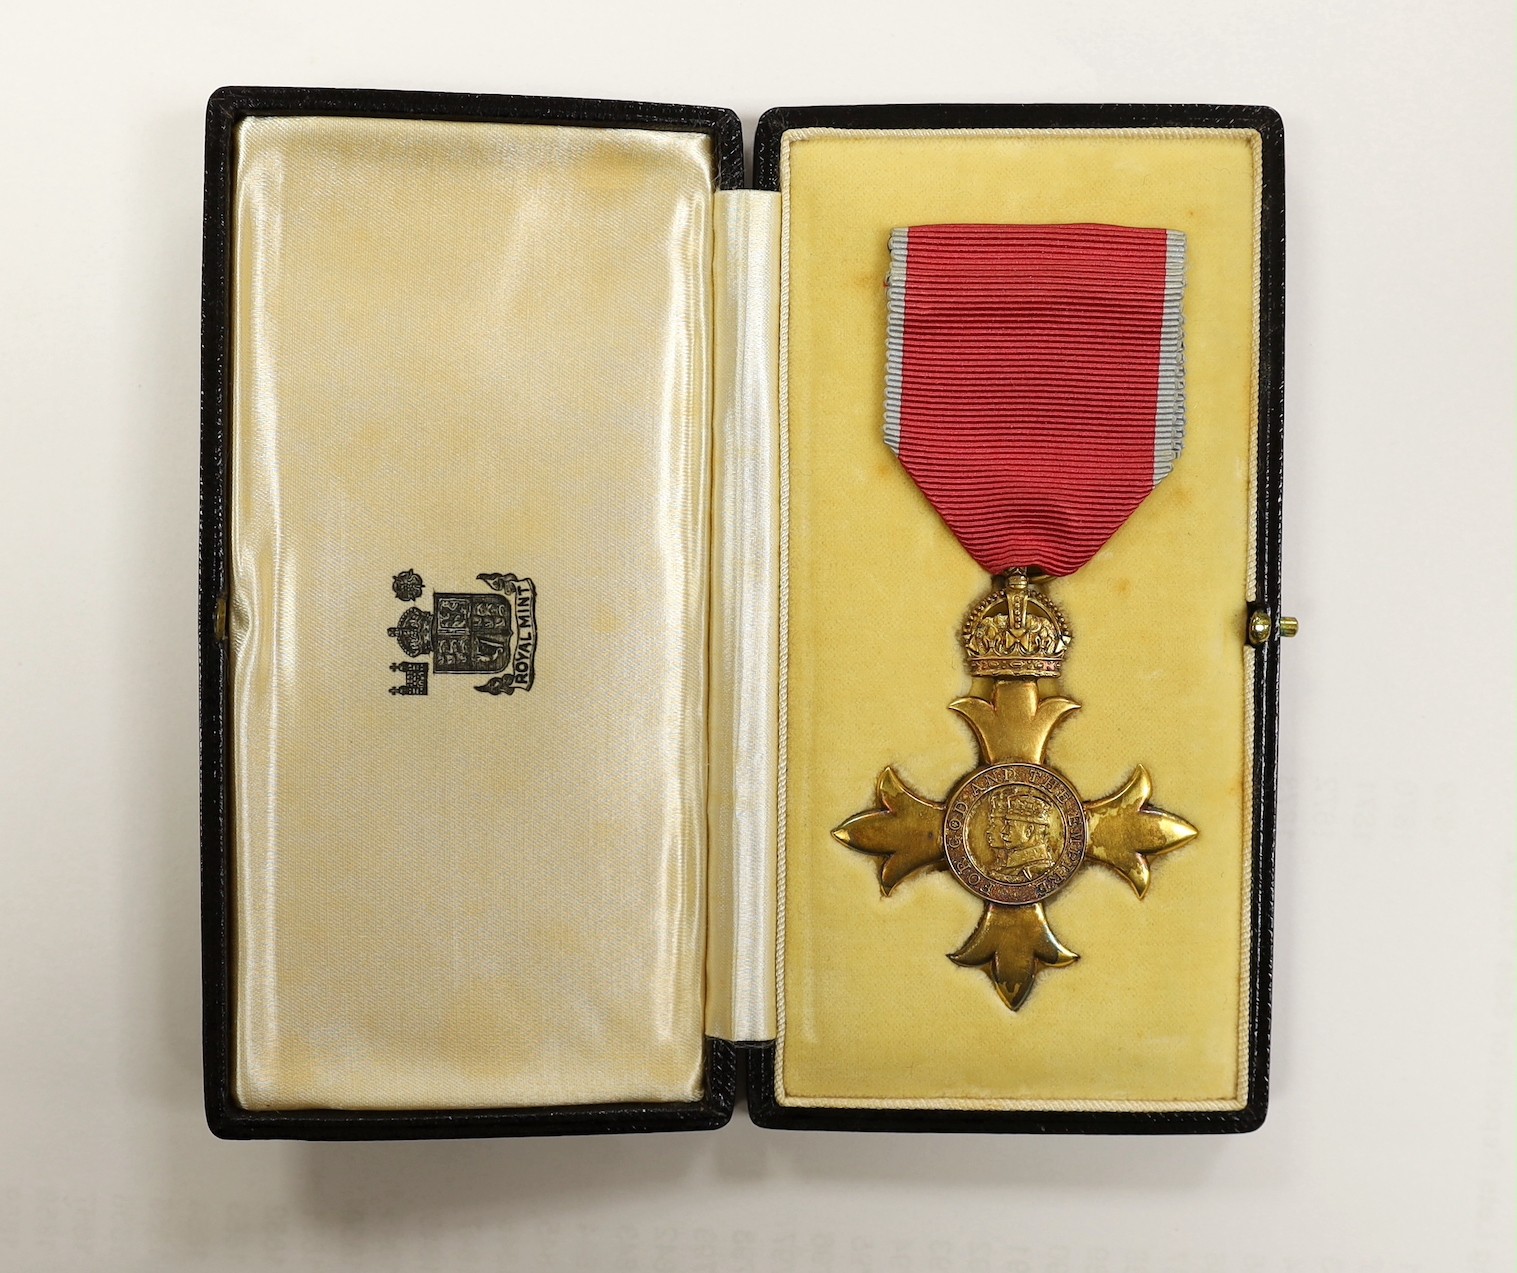 A cased O.B.E. Medal